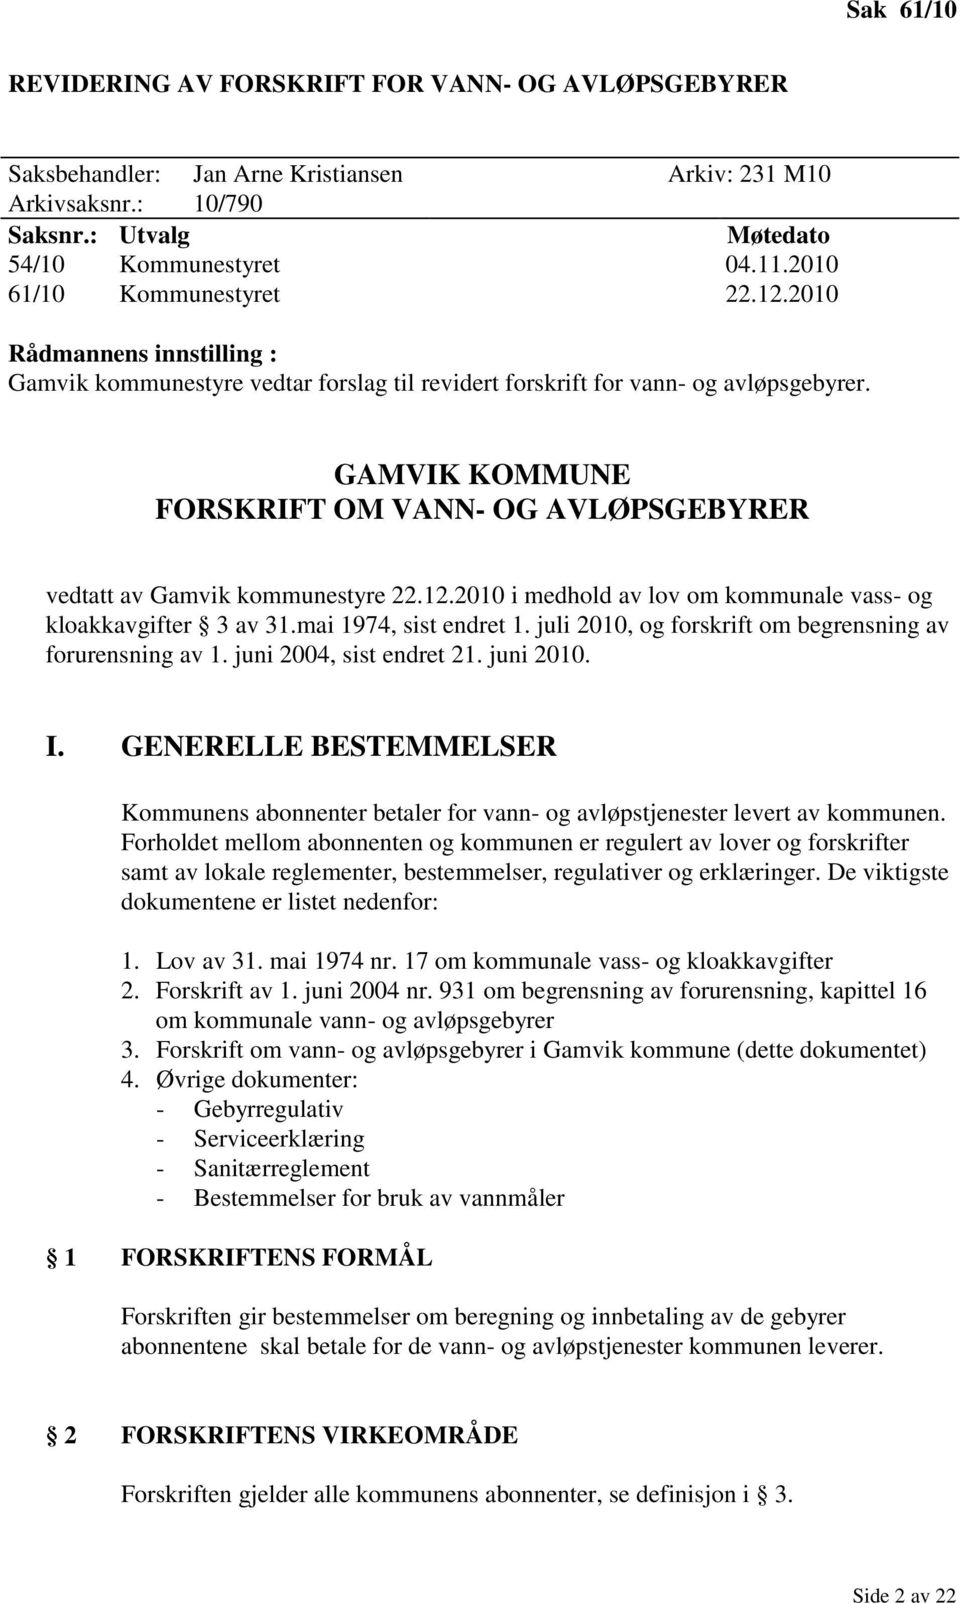 GAMVIK KOMMUNE FORSKRIFT OM VANN- OG AVLØPSGEBYRER vedtatt av Gamvik kommunestyre 22.12.2010 i medhold av lov om kommunale vass- og kloakkavgifter 3 av 31.mai 1974, sist endret 1.